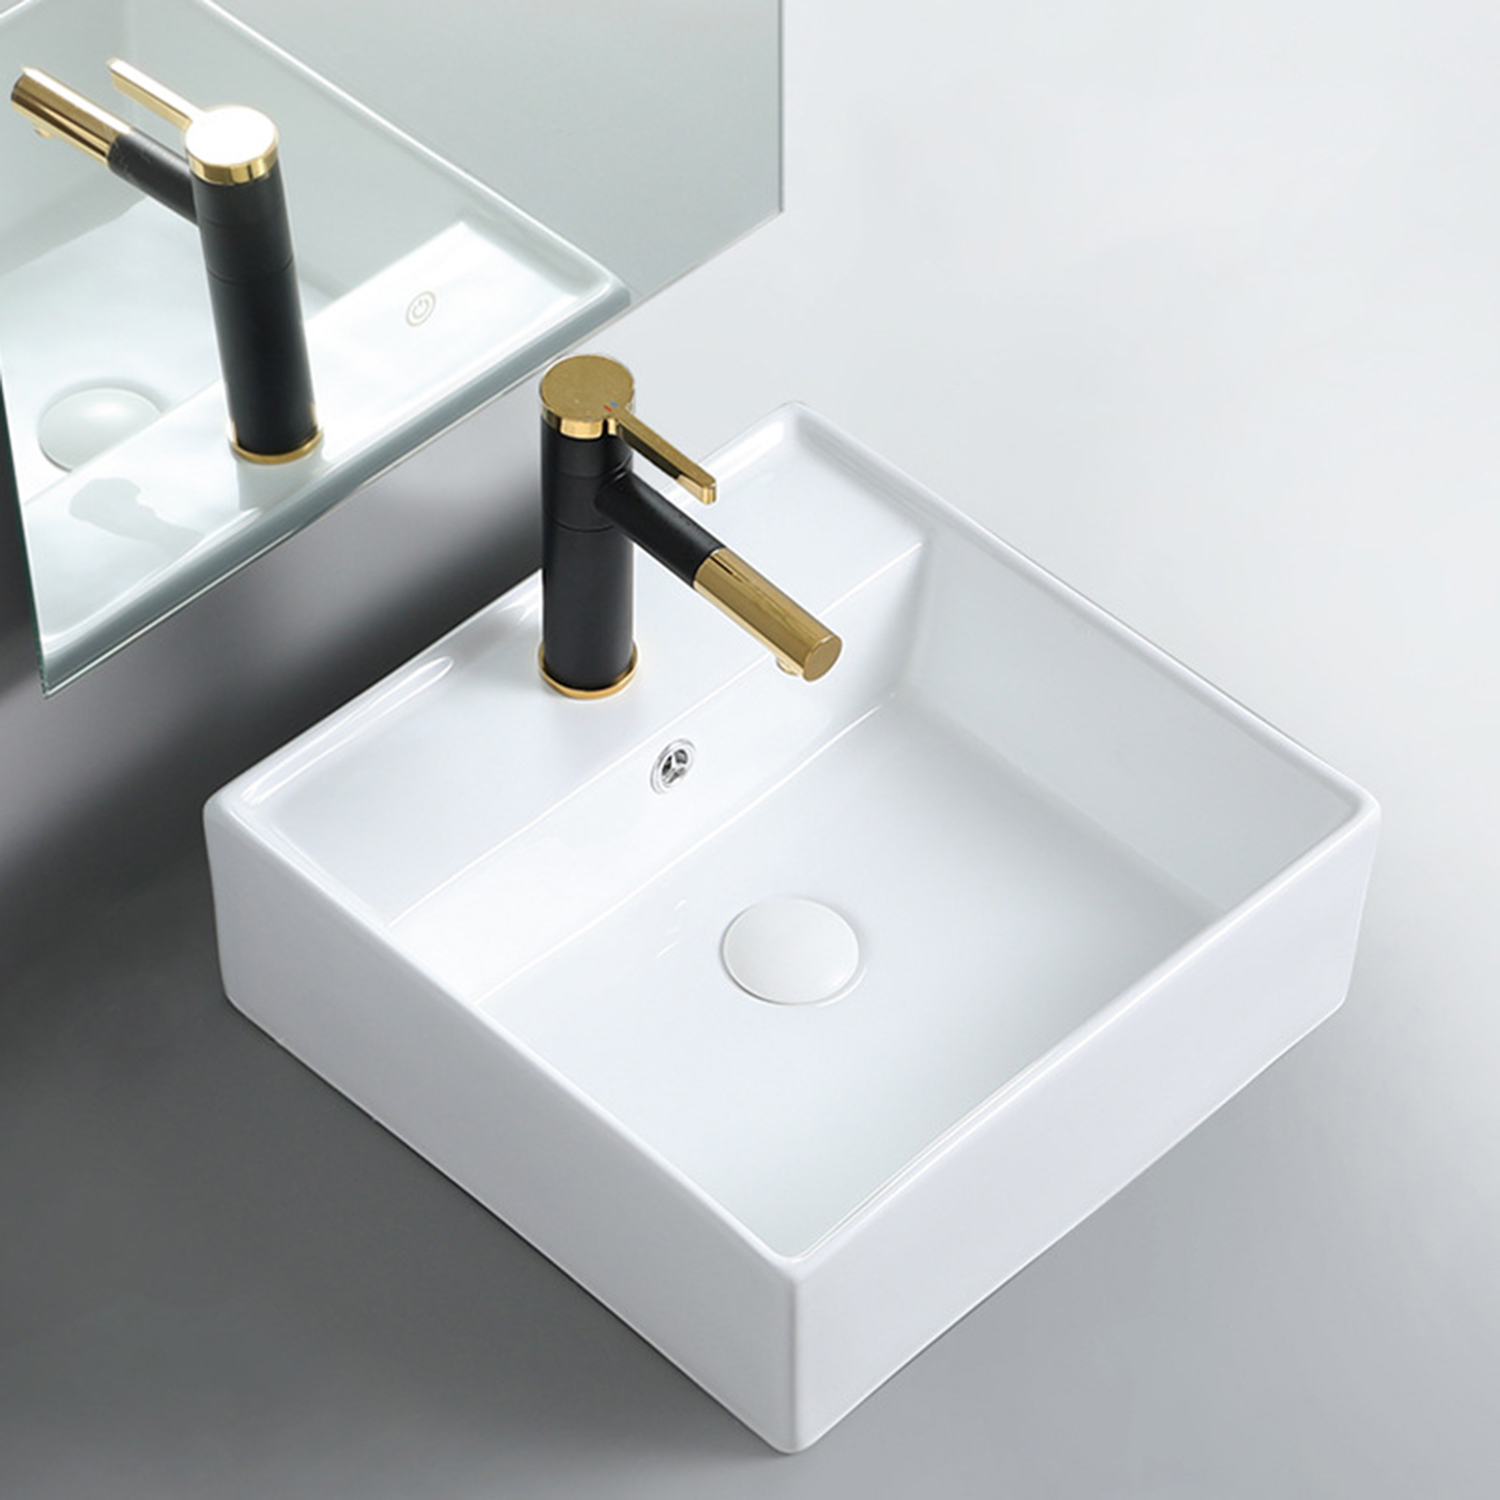 Sqaure Countertop Vanity Table Top Bathroom Cabinet Ceramic Sink